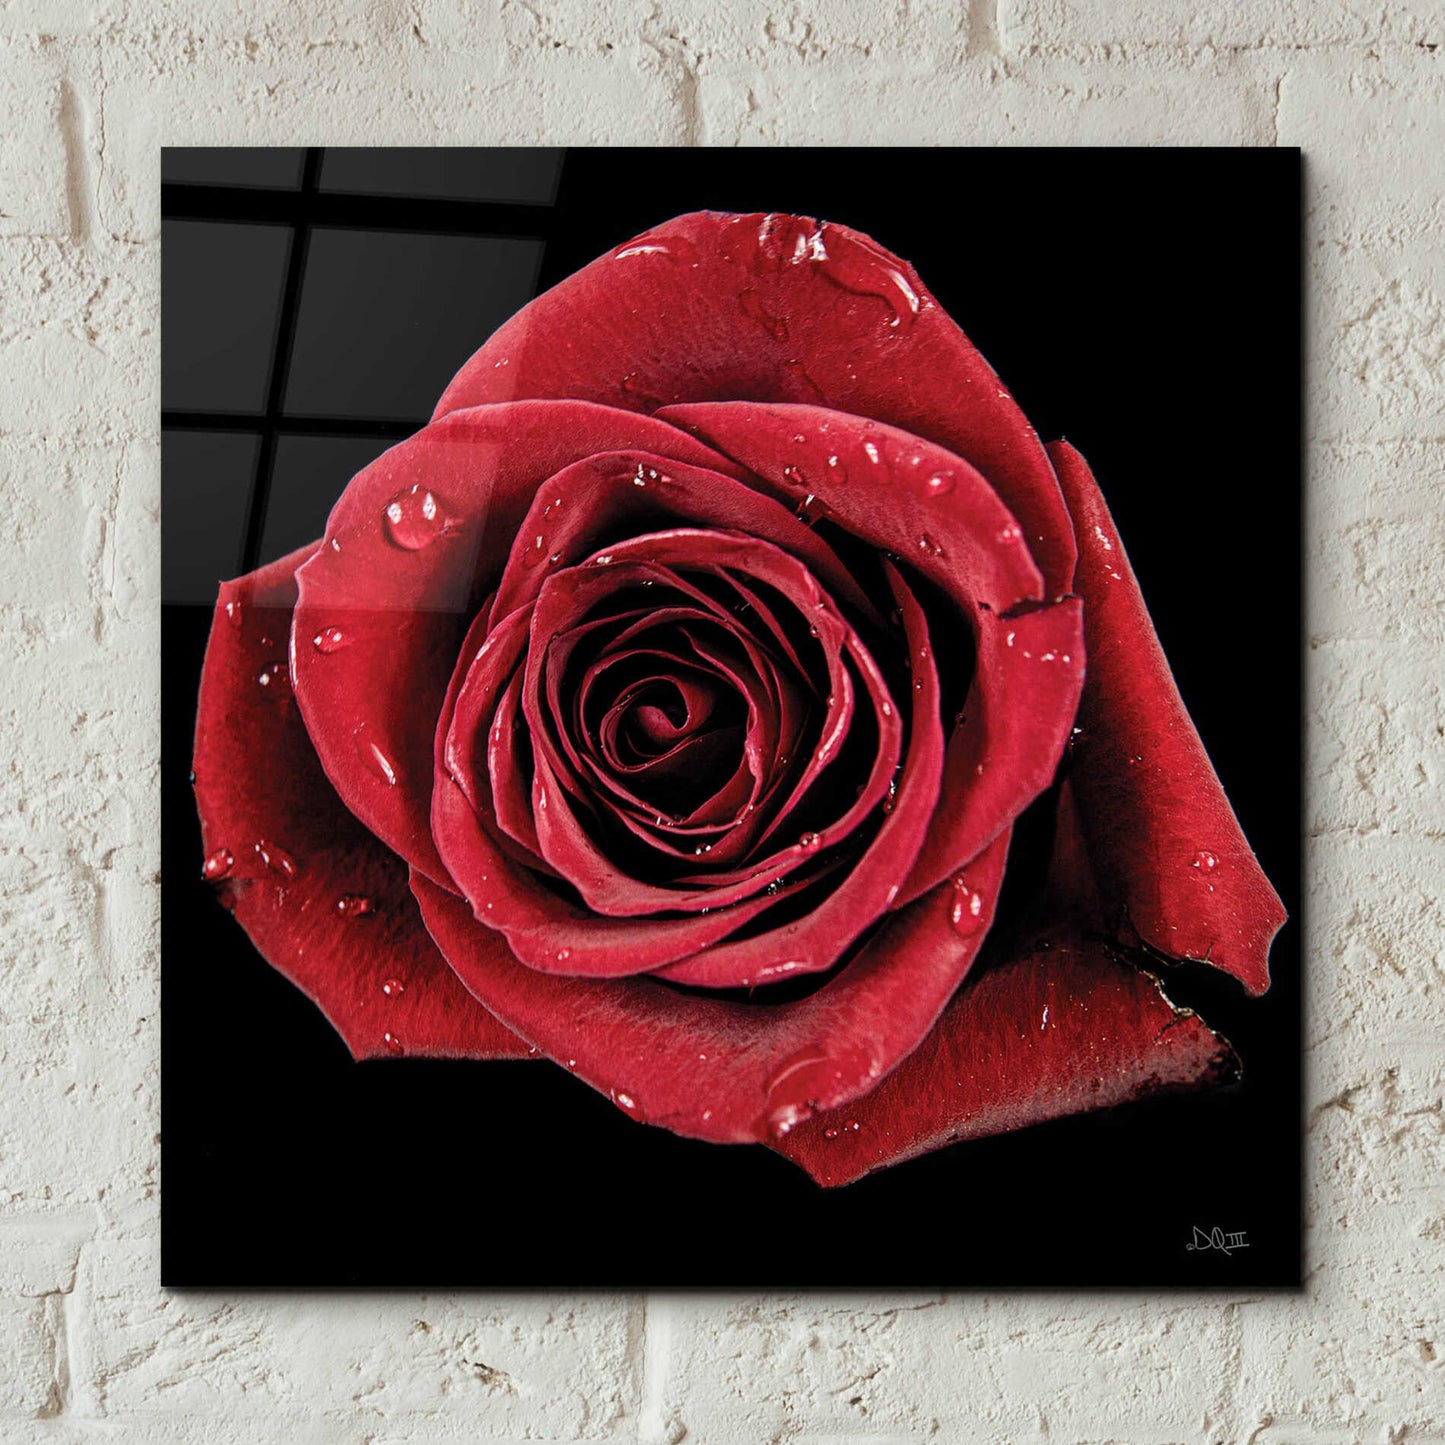 Epic Art 'Broken Heart Rose' by Donnie Quillen, Acrylic Glass Wall Art,12x12